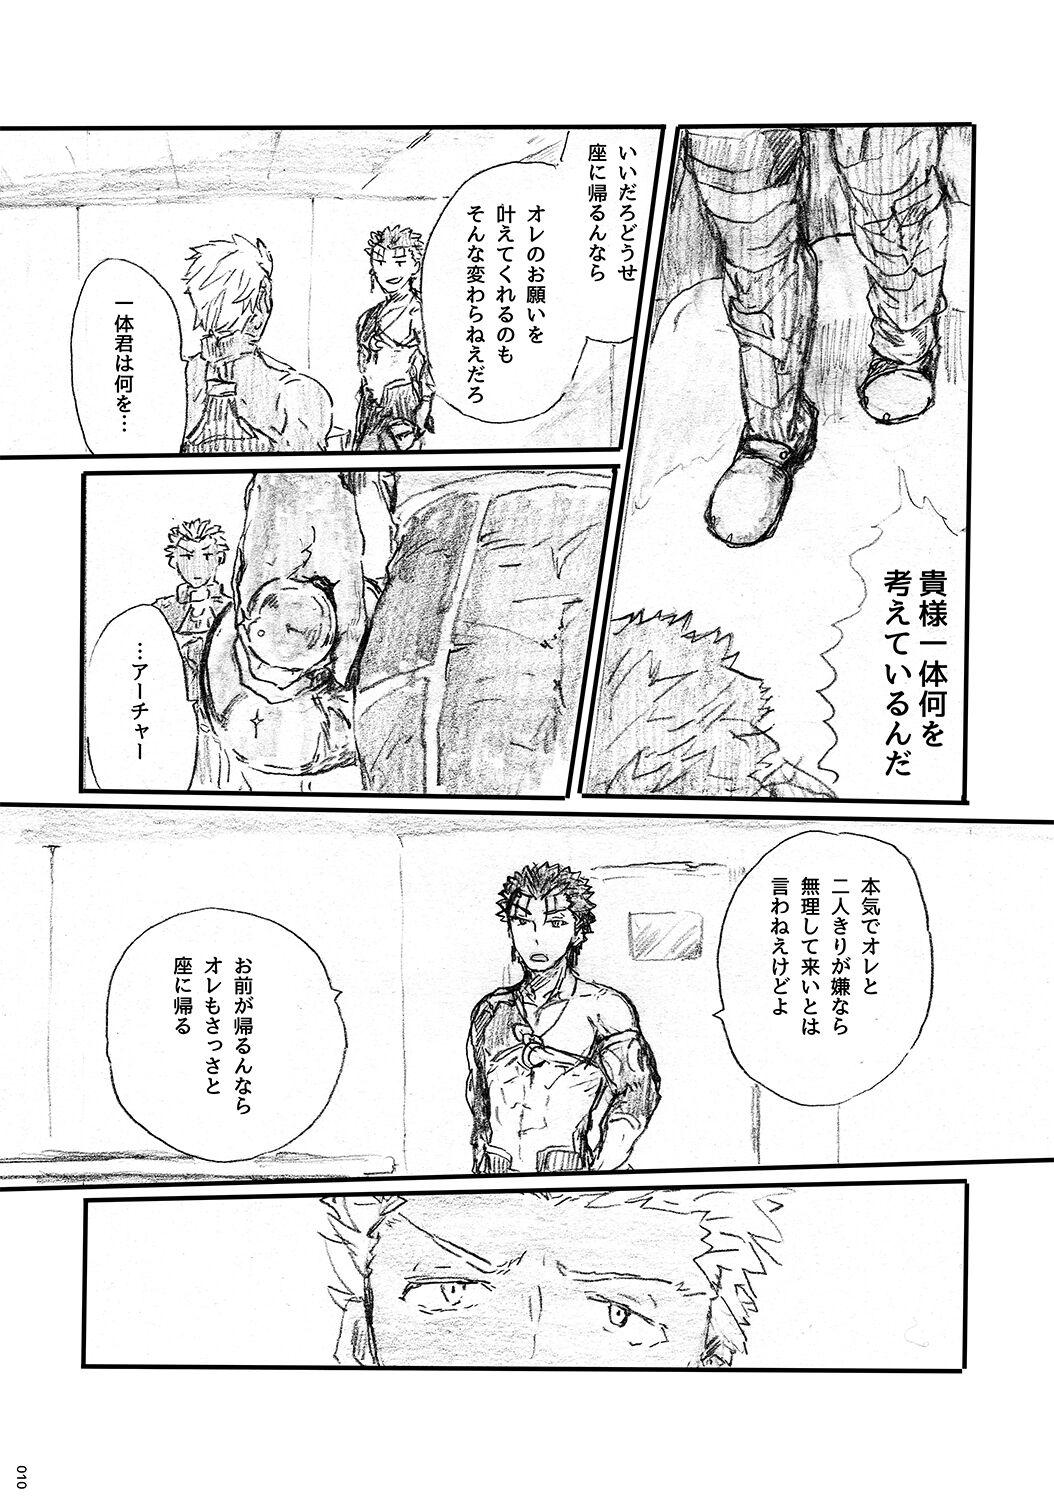 Retro Ano Suiheisen no Mukou - Fate grand order Cojiendo - Page 9